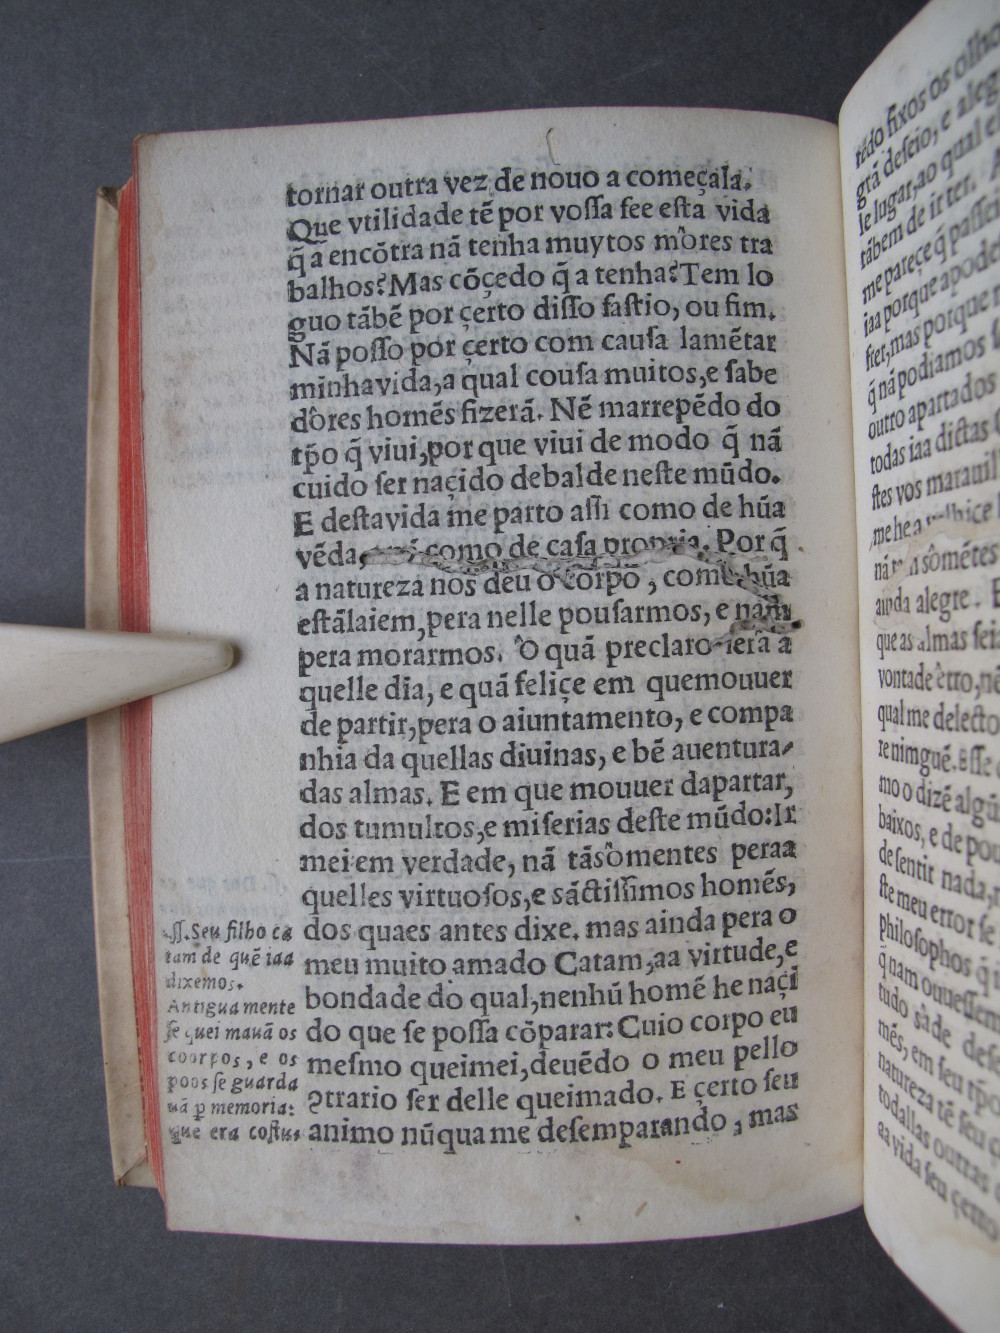 Folio E7 verso